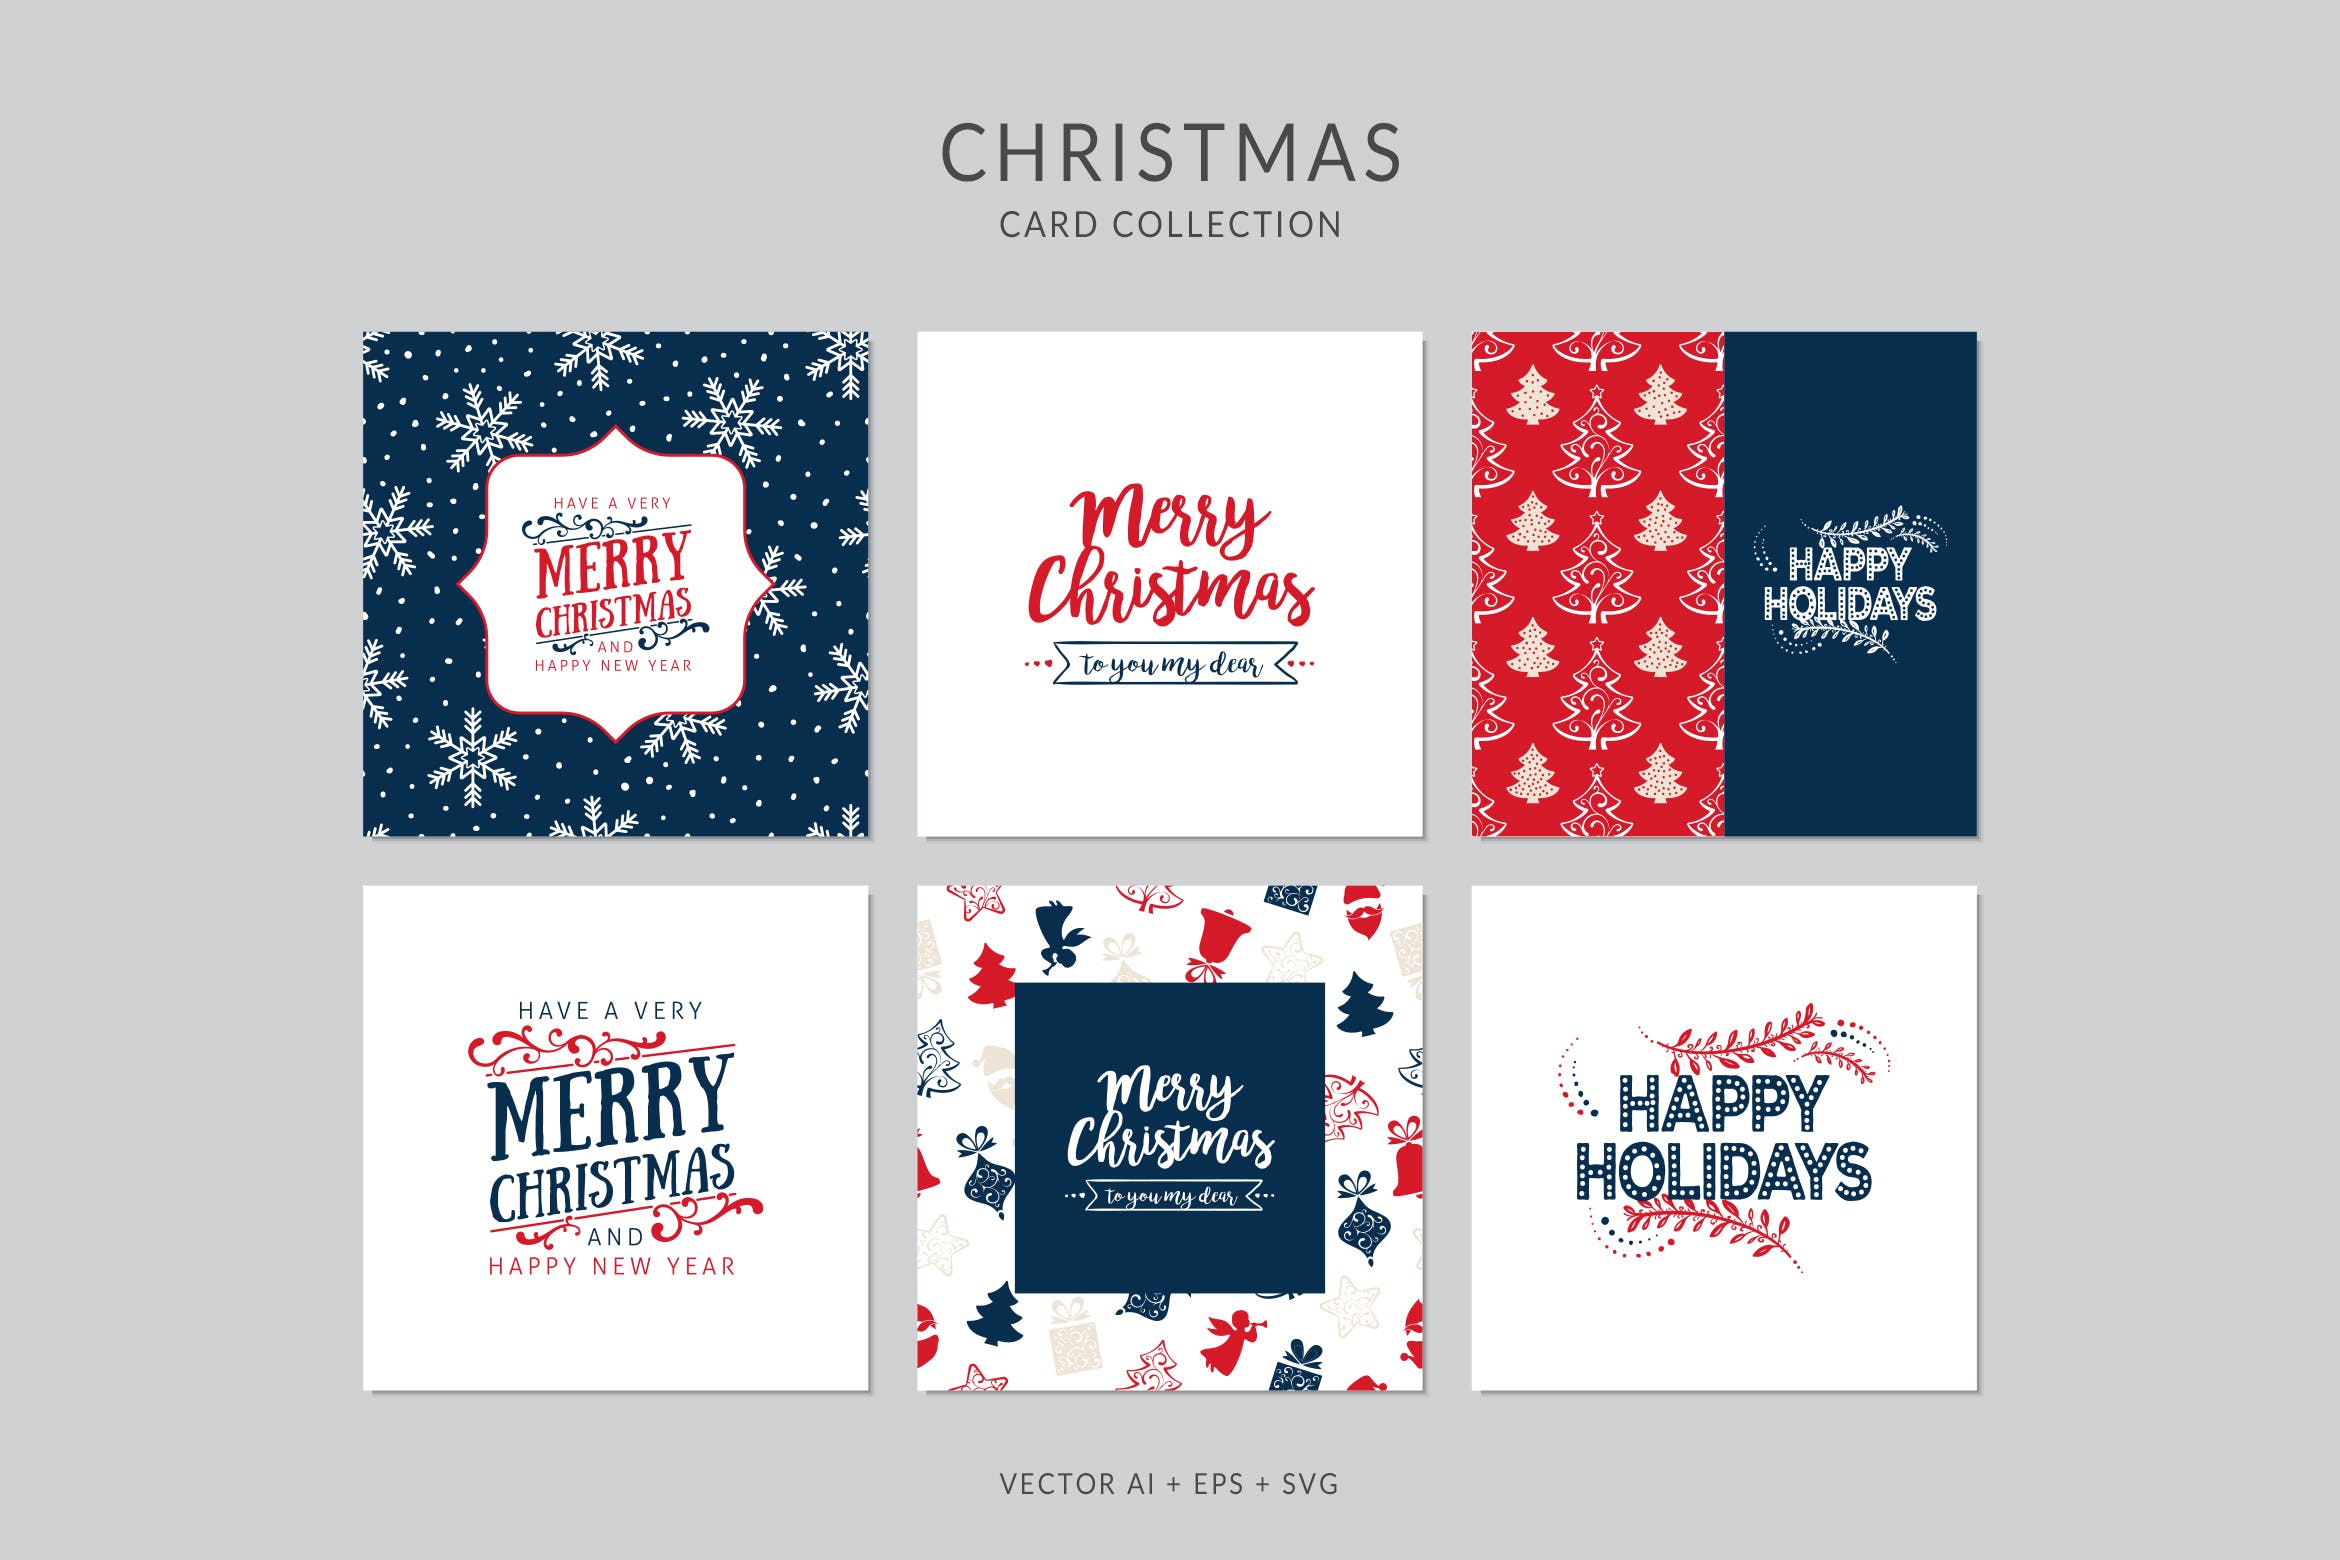 浓厚节日氛围圣诞节贺卡矢量设计模板集v2 Christmas Greeting Card Vector Set插图